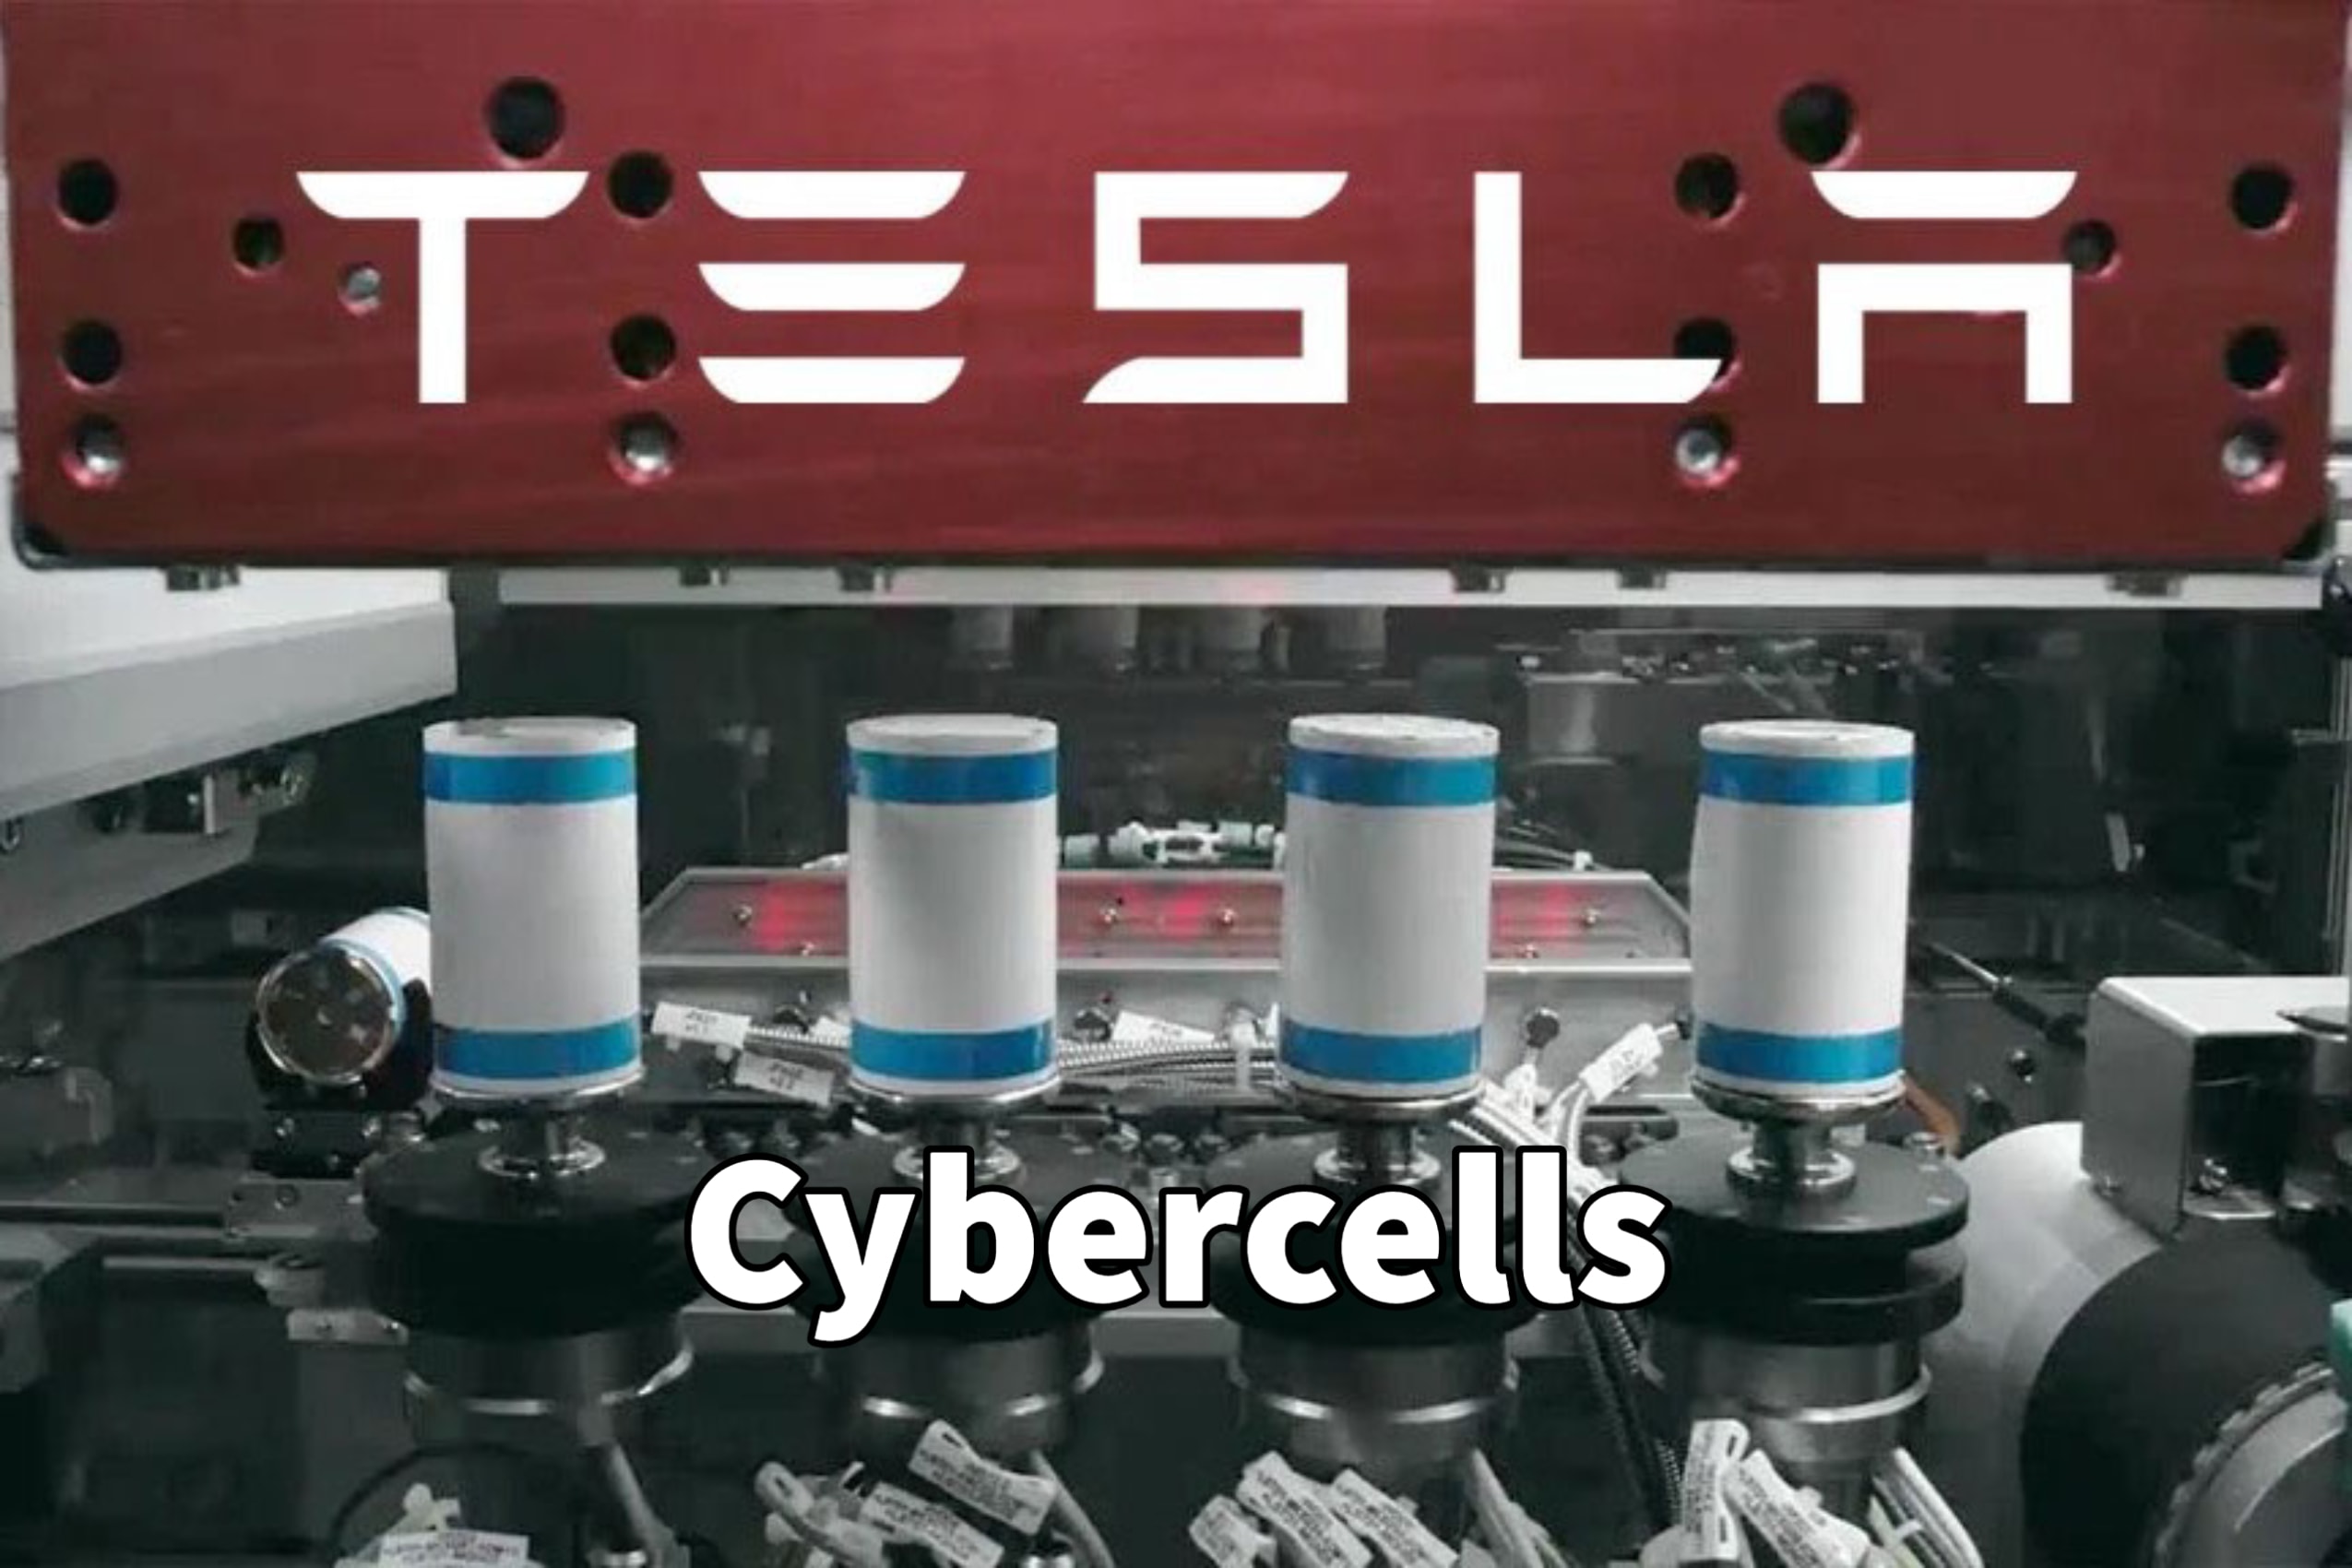 Cyber Powerbank - Tesla Cybertruck Inspired Portable Battery